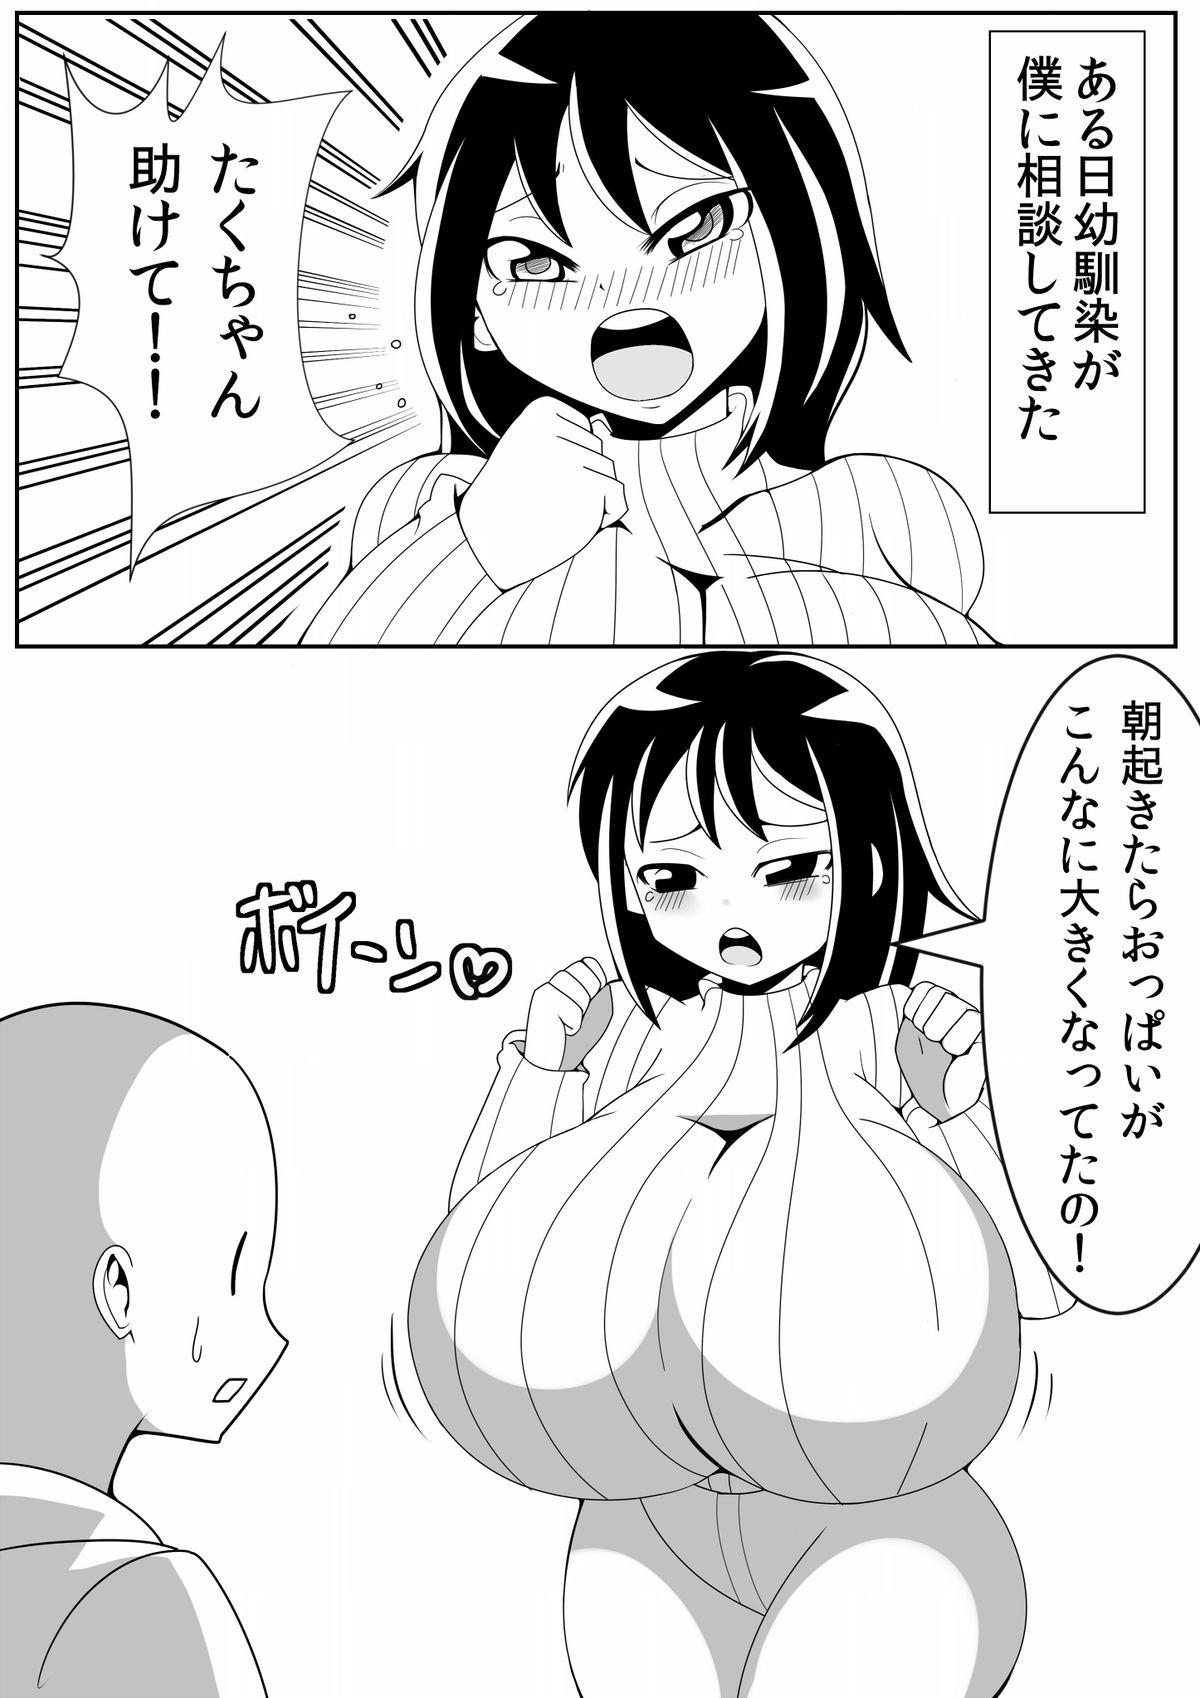 Mms Asaokitara Oppai Konnani ga Okkiku Nacchatta First Time - Page 3